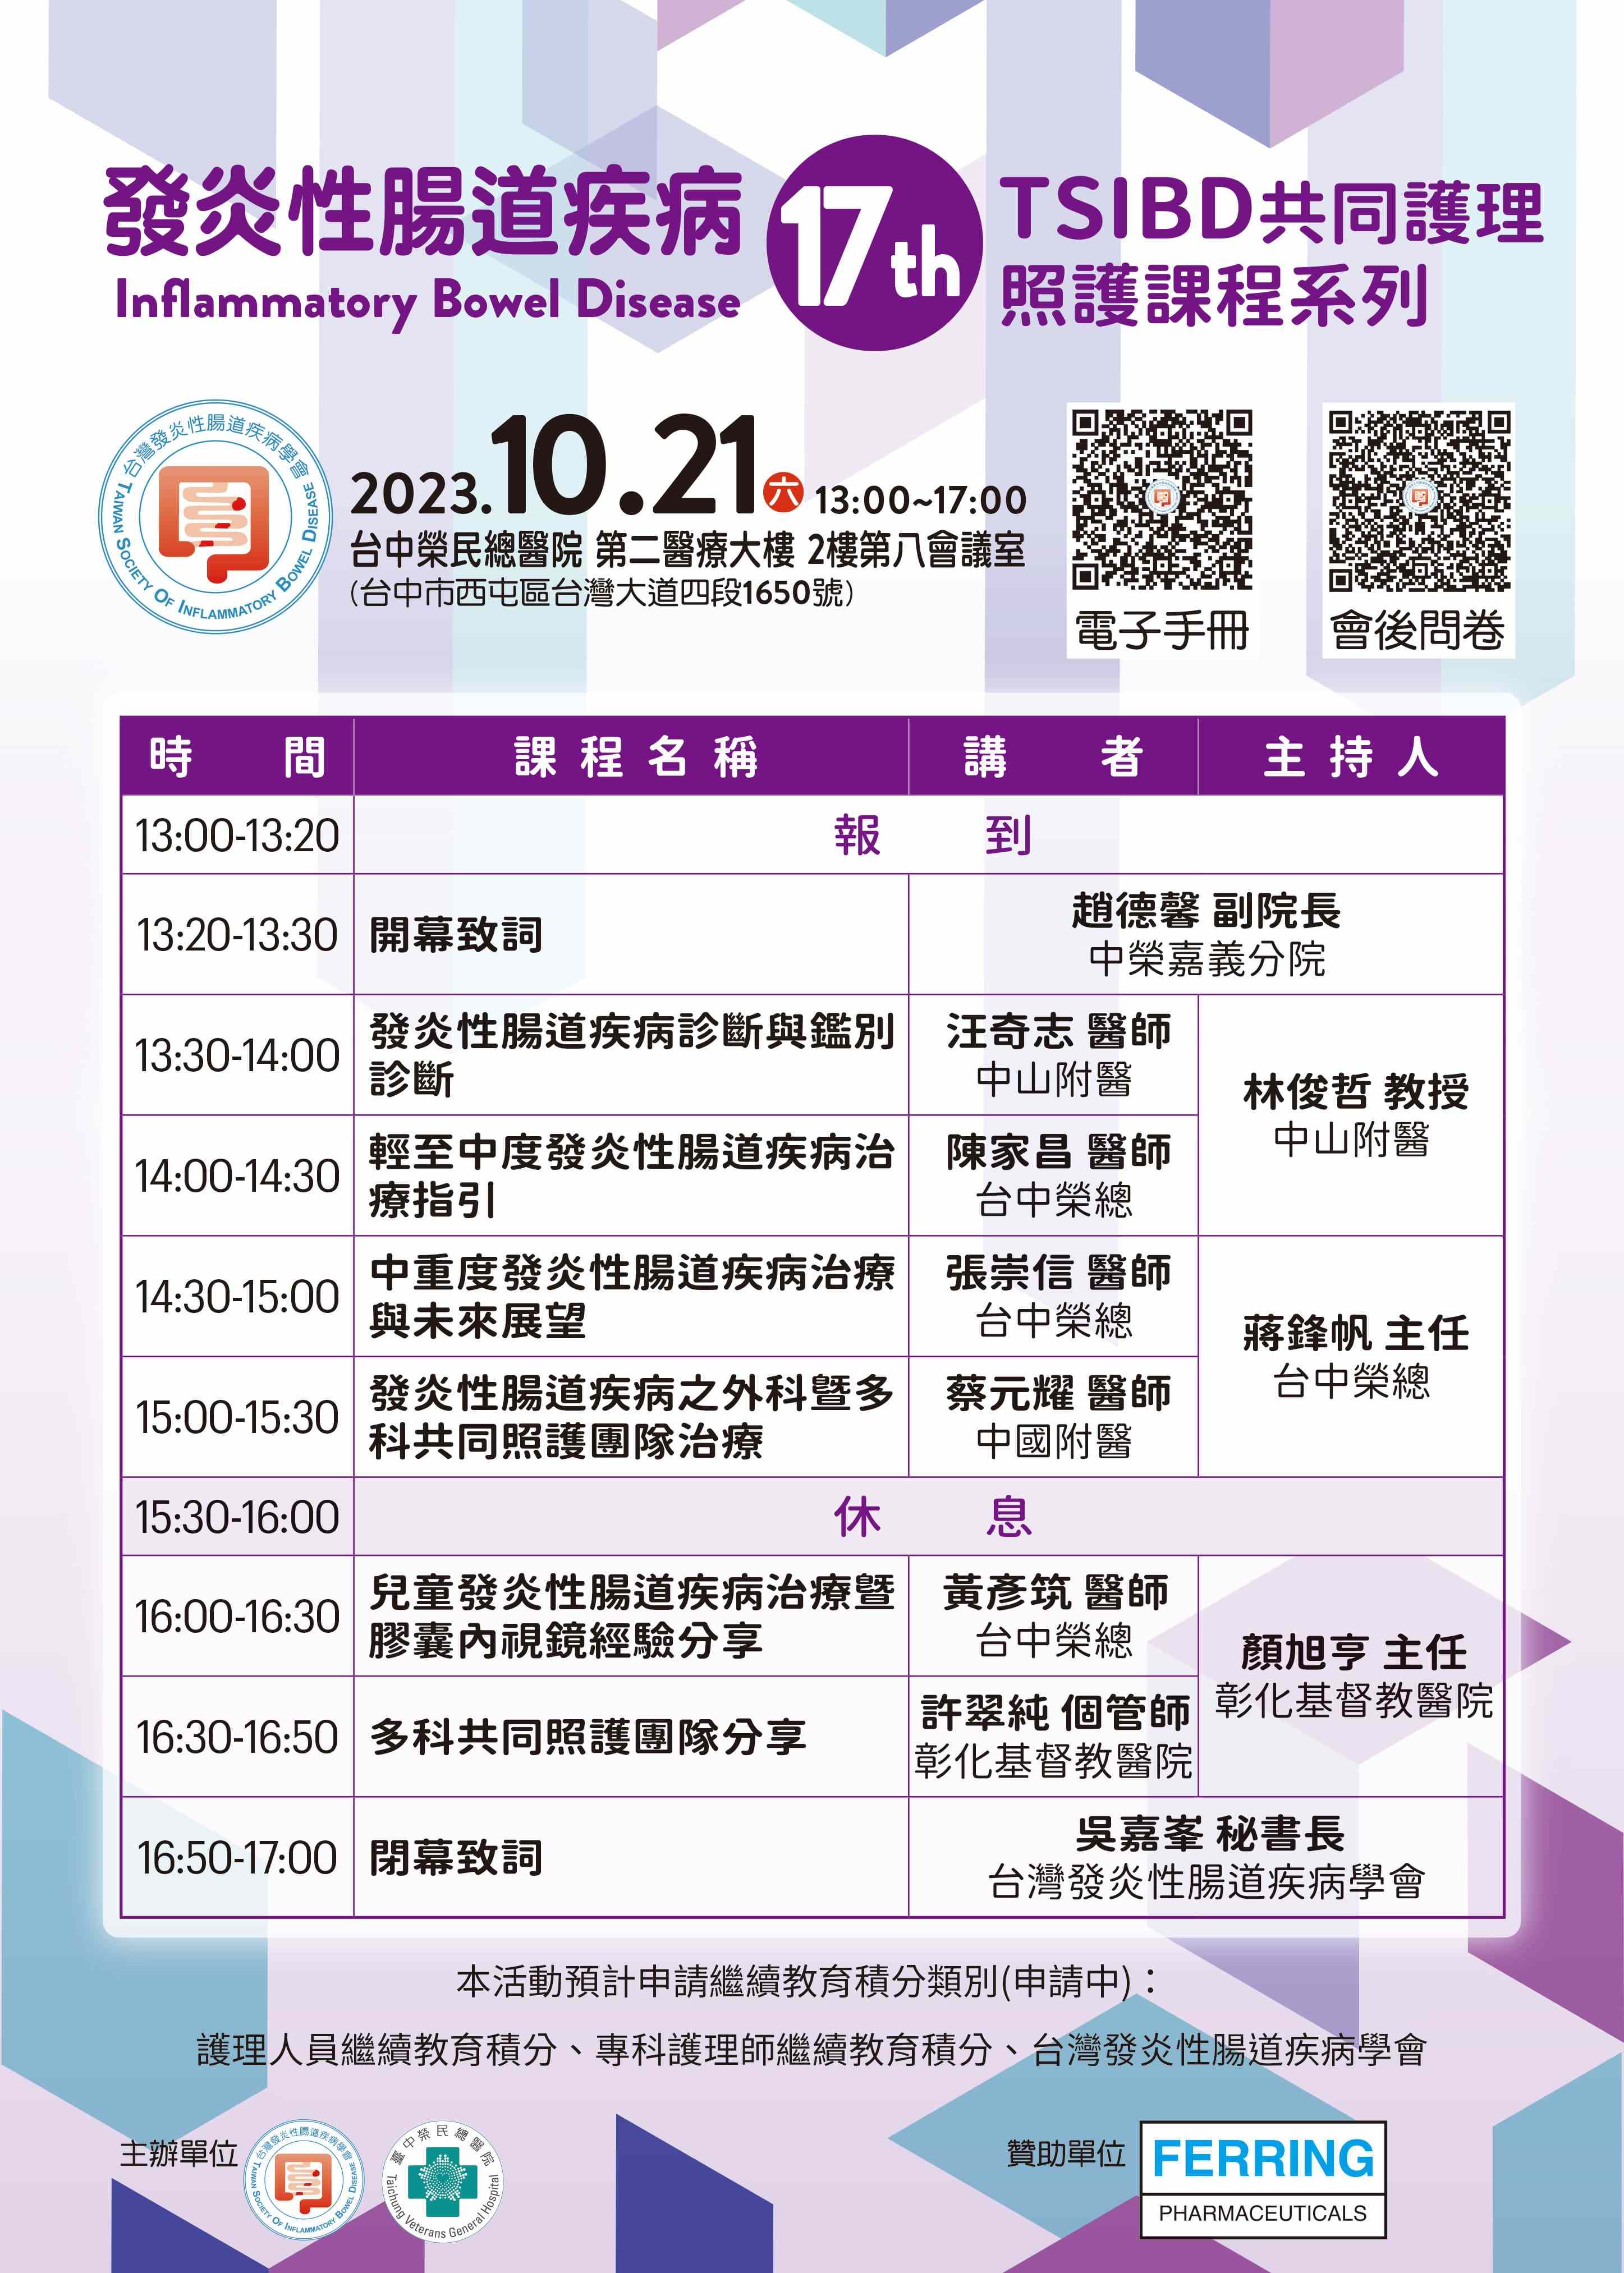 【活動】10月21日 TSIBD共同護理照護課程系列(17)－台中榮總~活動結束